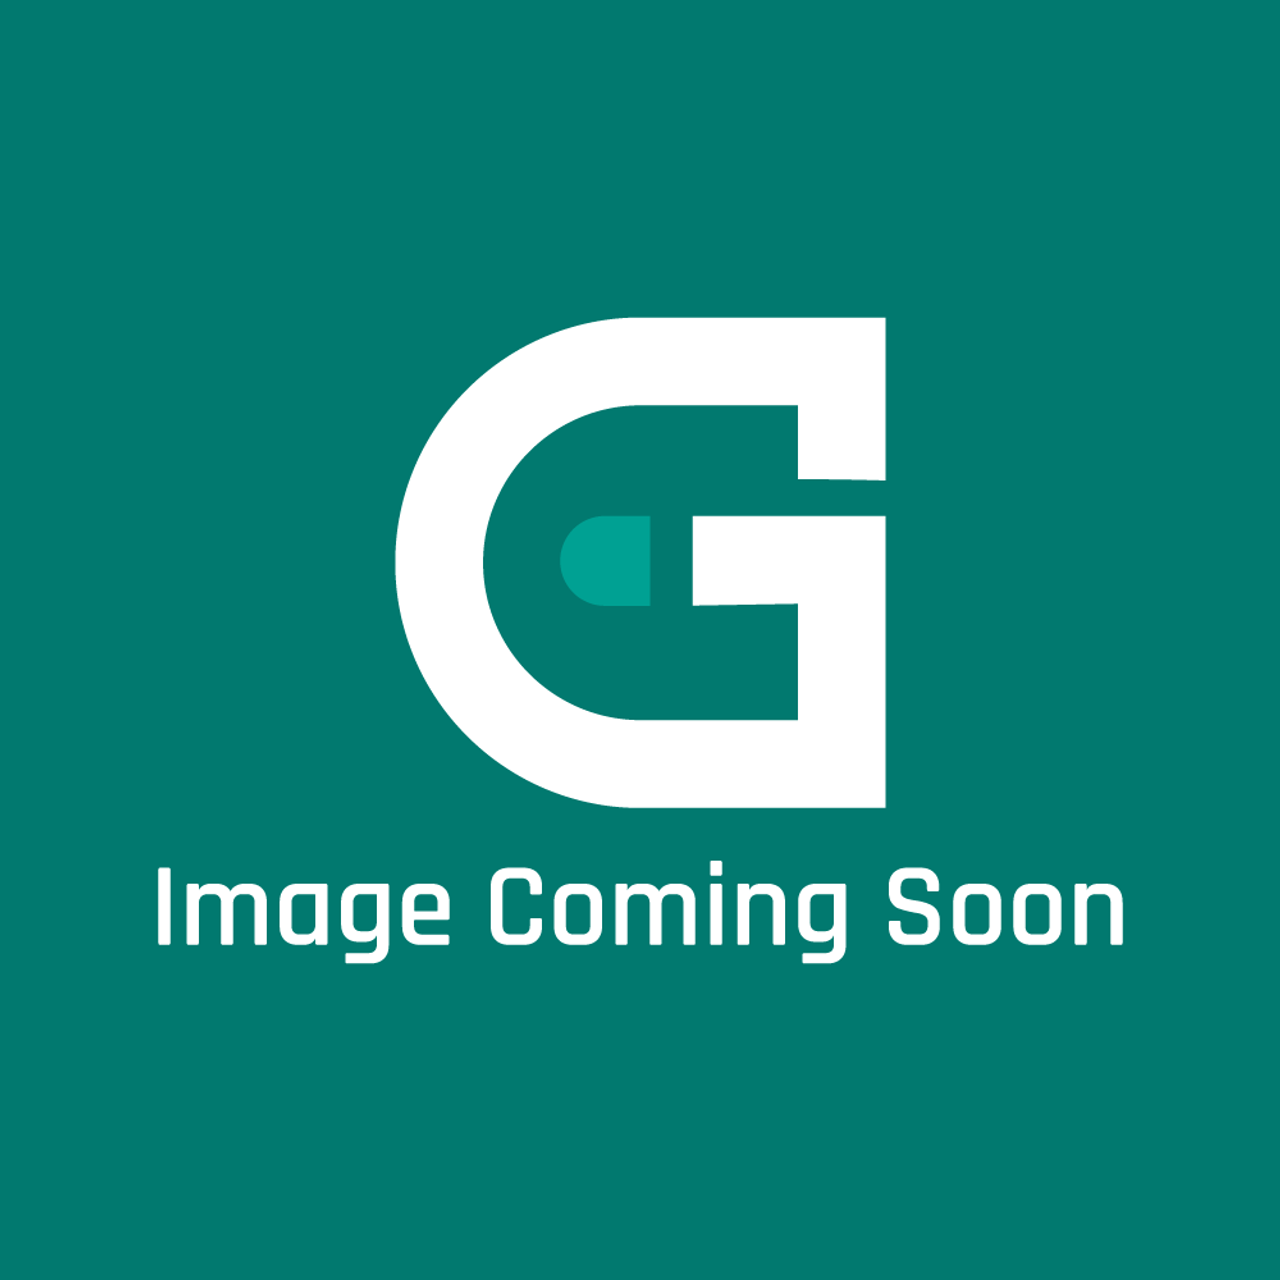 Groen 145380 - Heat Exchanger Ckct-10 S Team - Image Coming Soon!